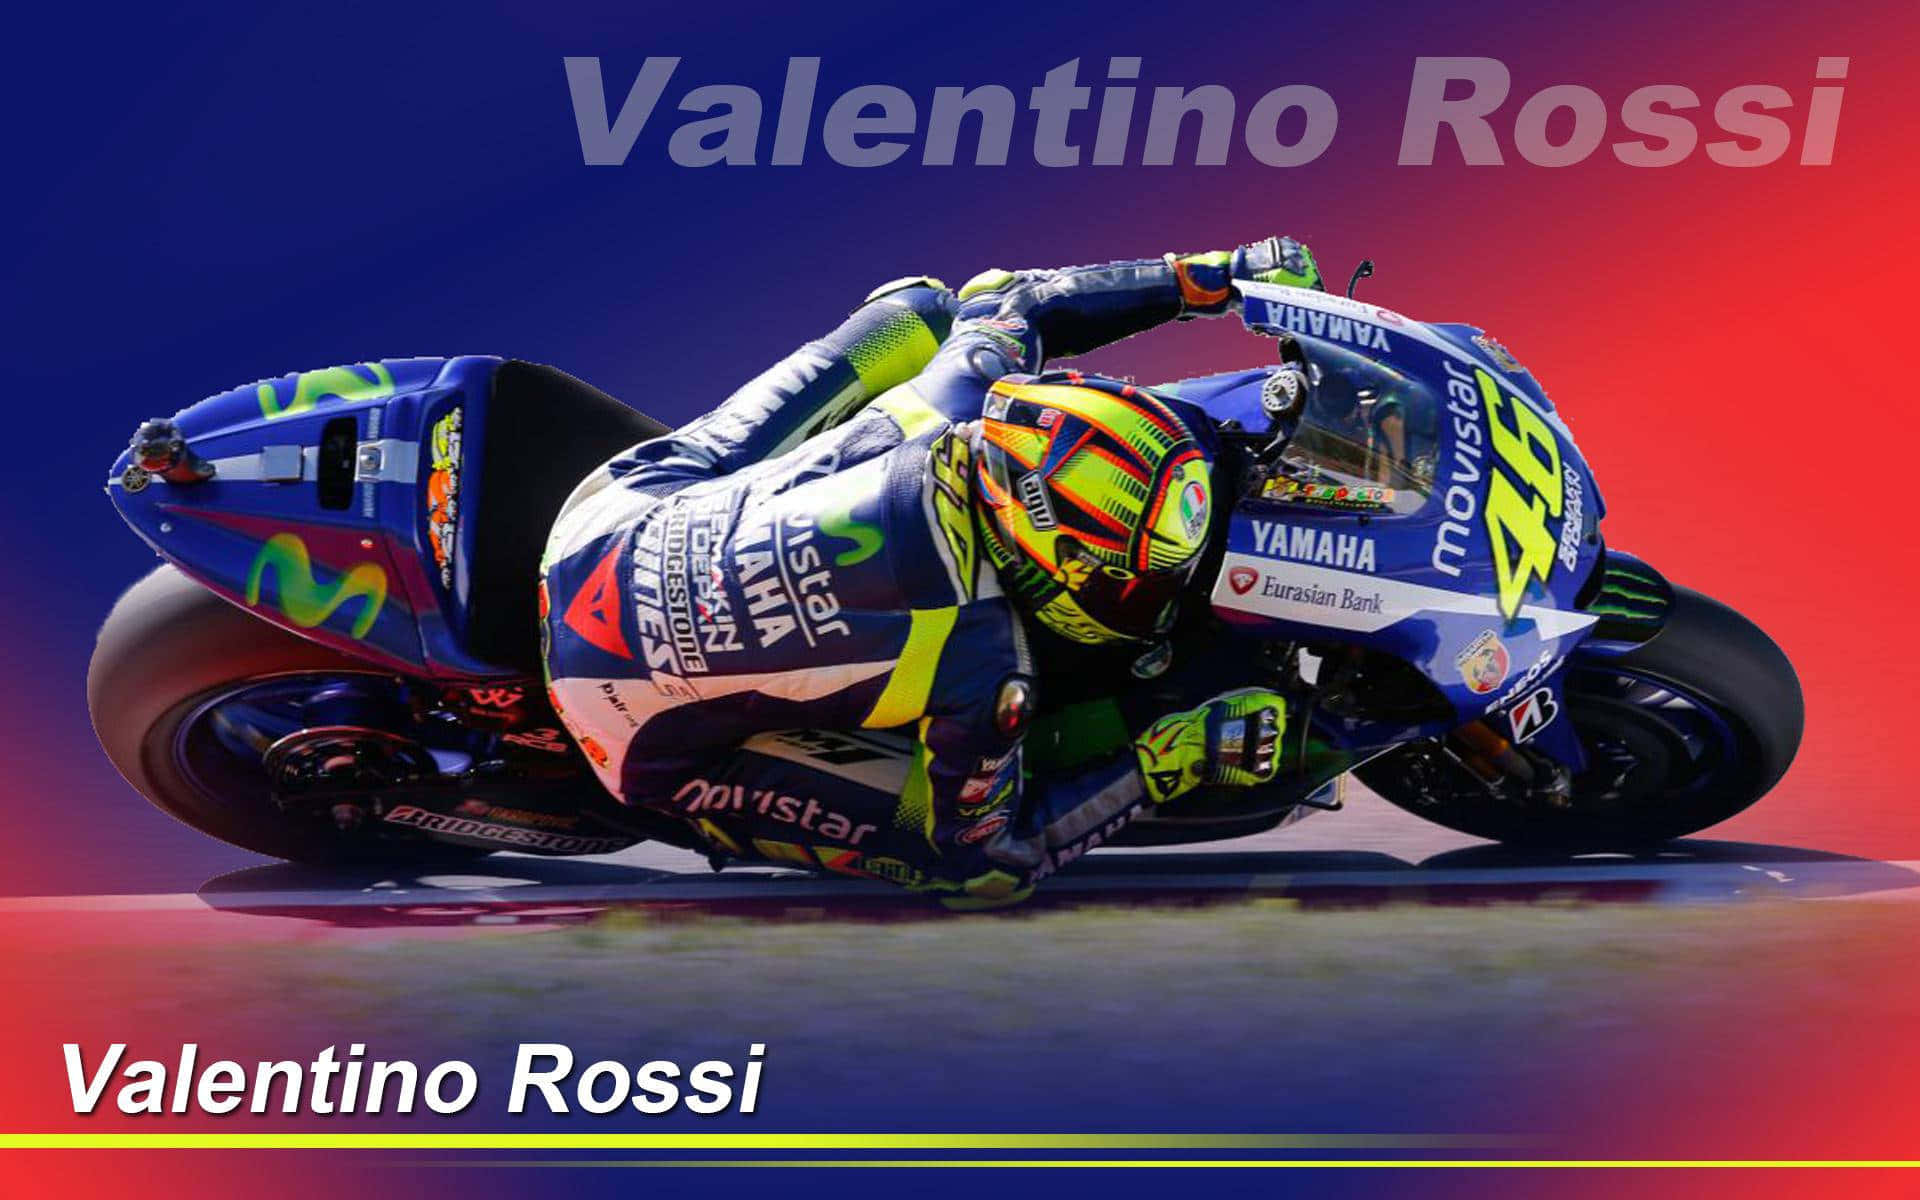 VR46 Valentino Rossi Wallpaper